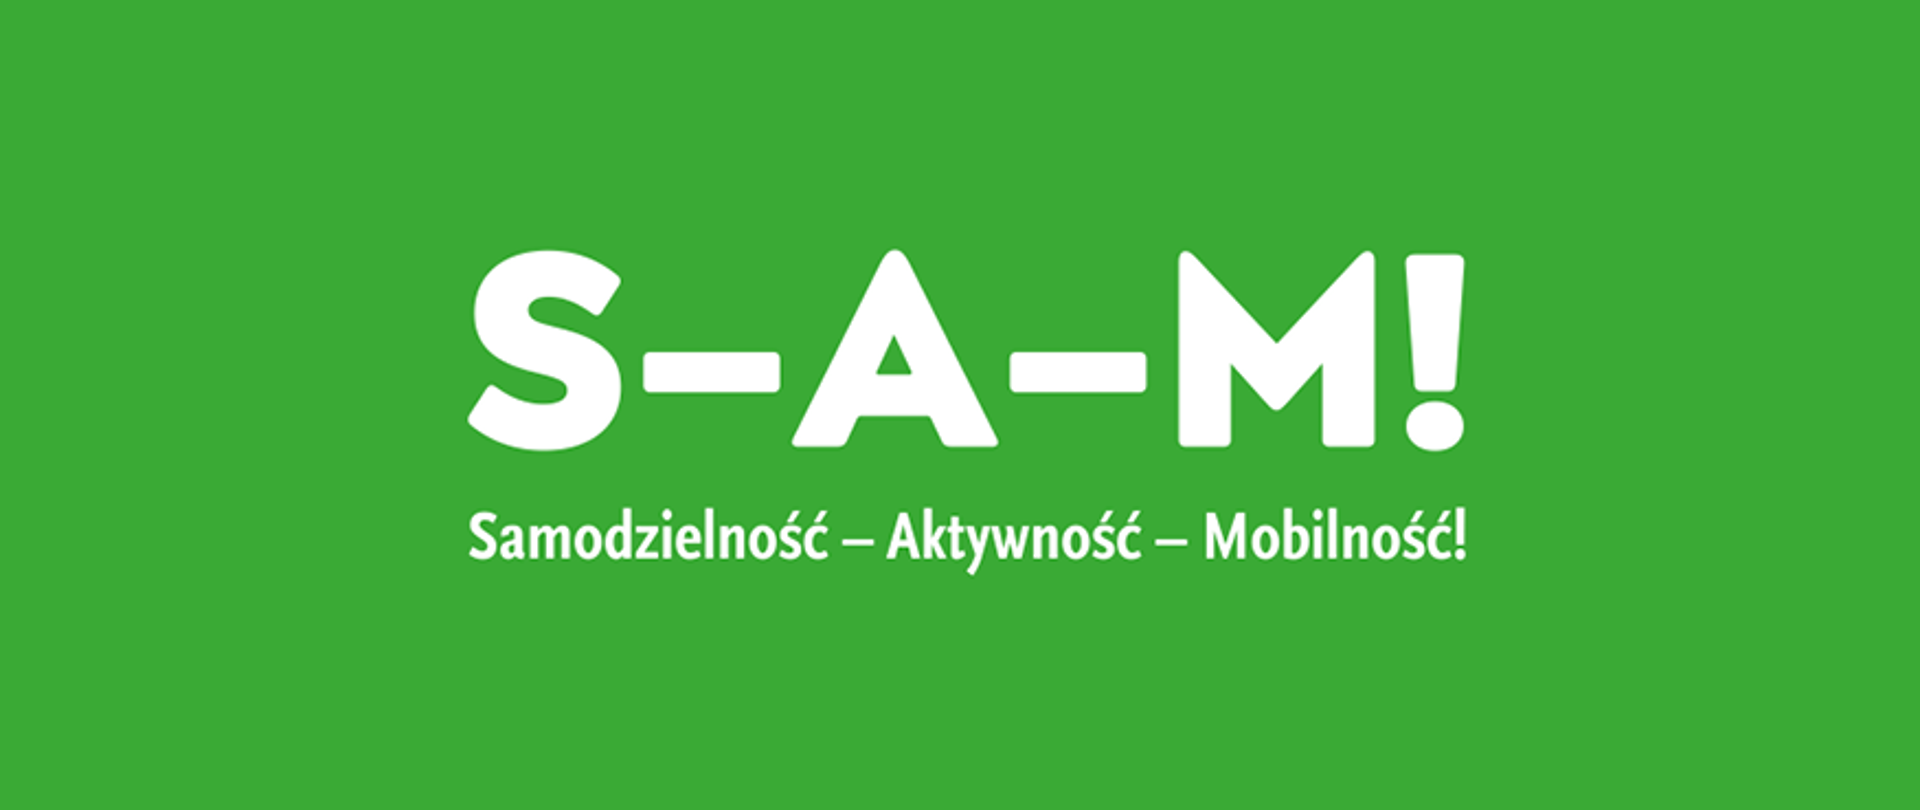 Na zielonym tle napisy: S-A-M! Samodzielność- Aktywność- Mobilność